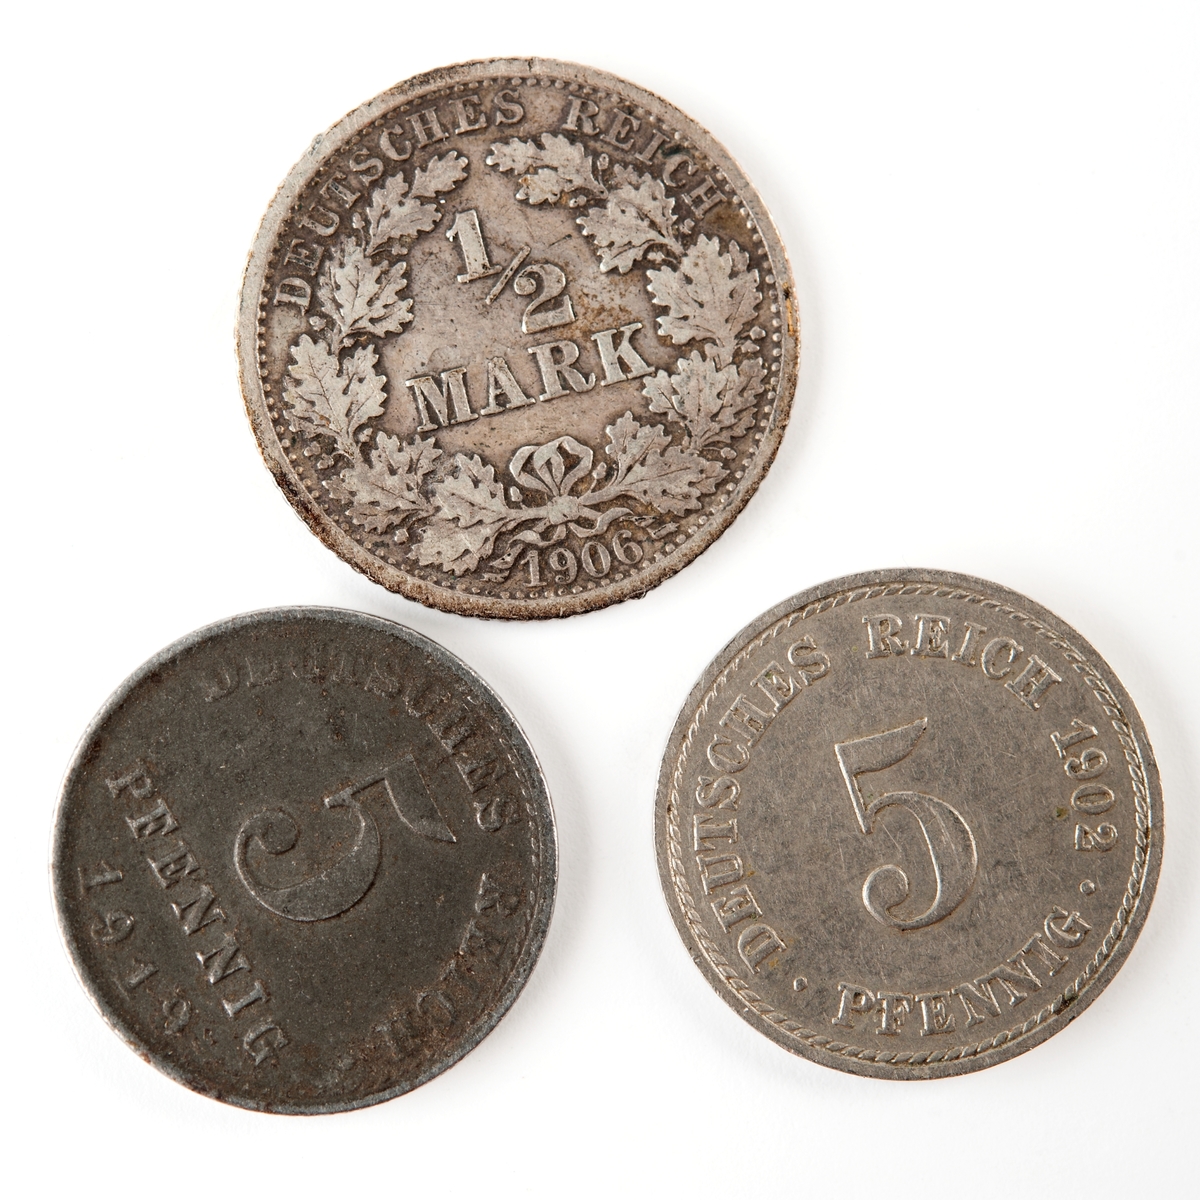 Tyskt silvermynt, 5 pfennig från 1902.